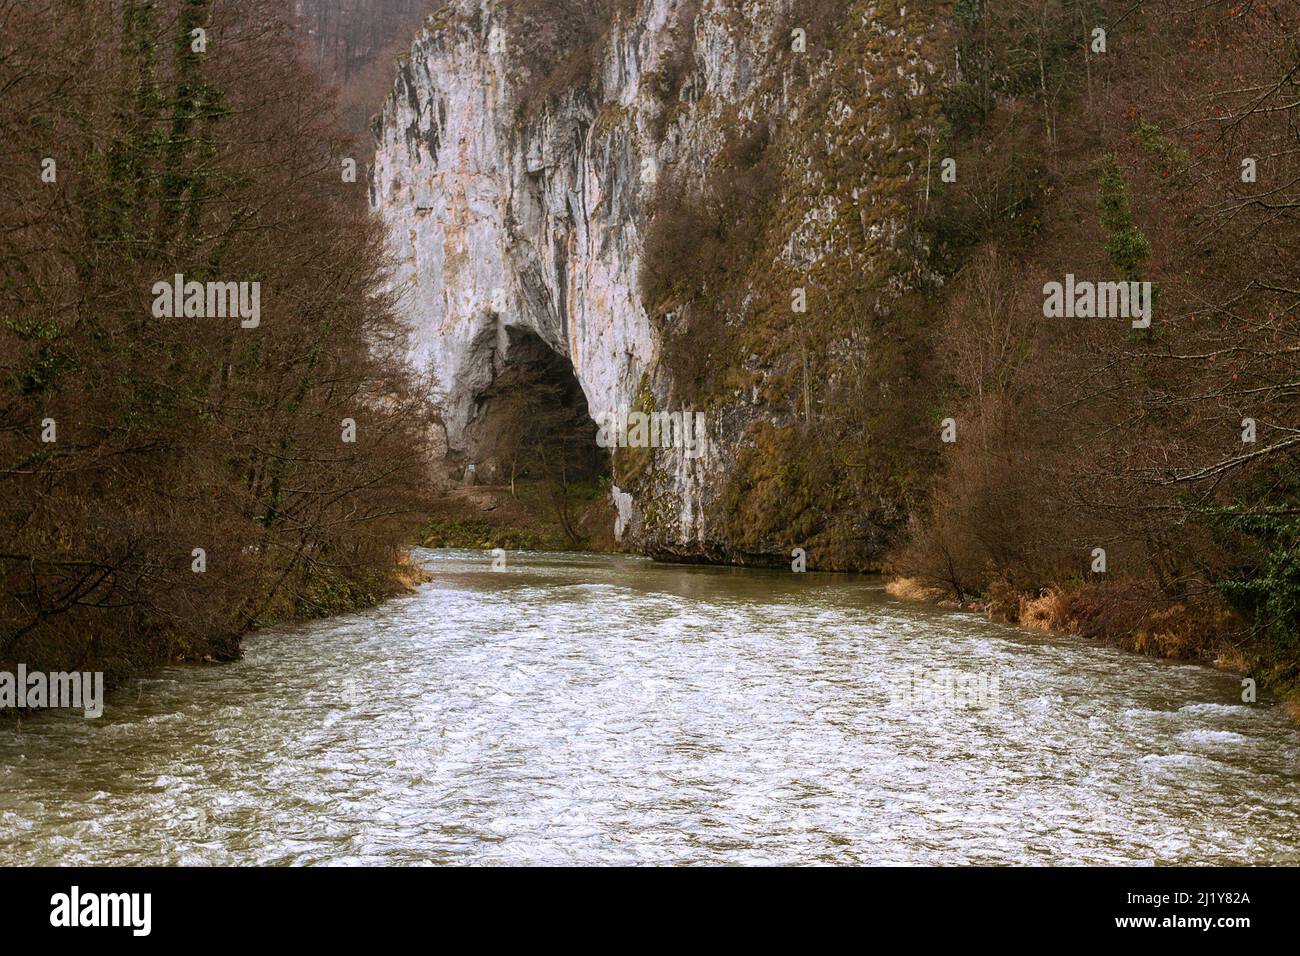 Cueva de Ungurului en las montañas de Apuseni, Rumanía; esta cueva está situada en un parque natural, cerca del río Crusul Repede Foto de stock